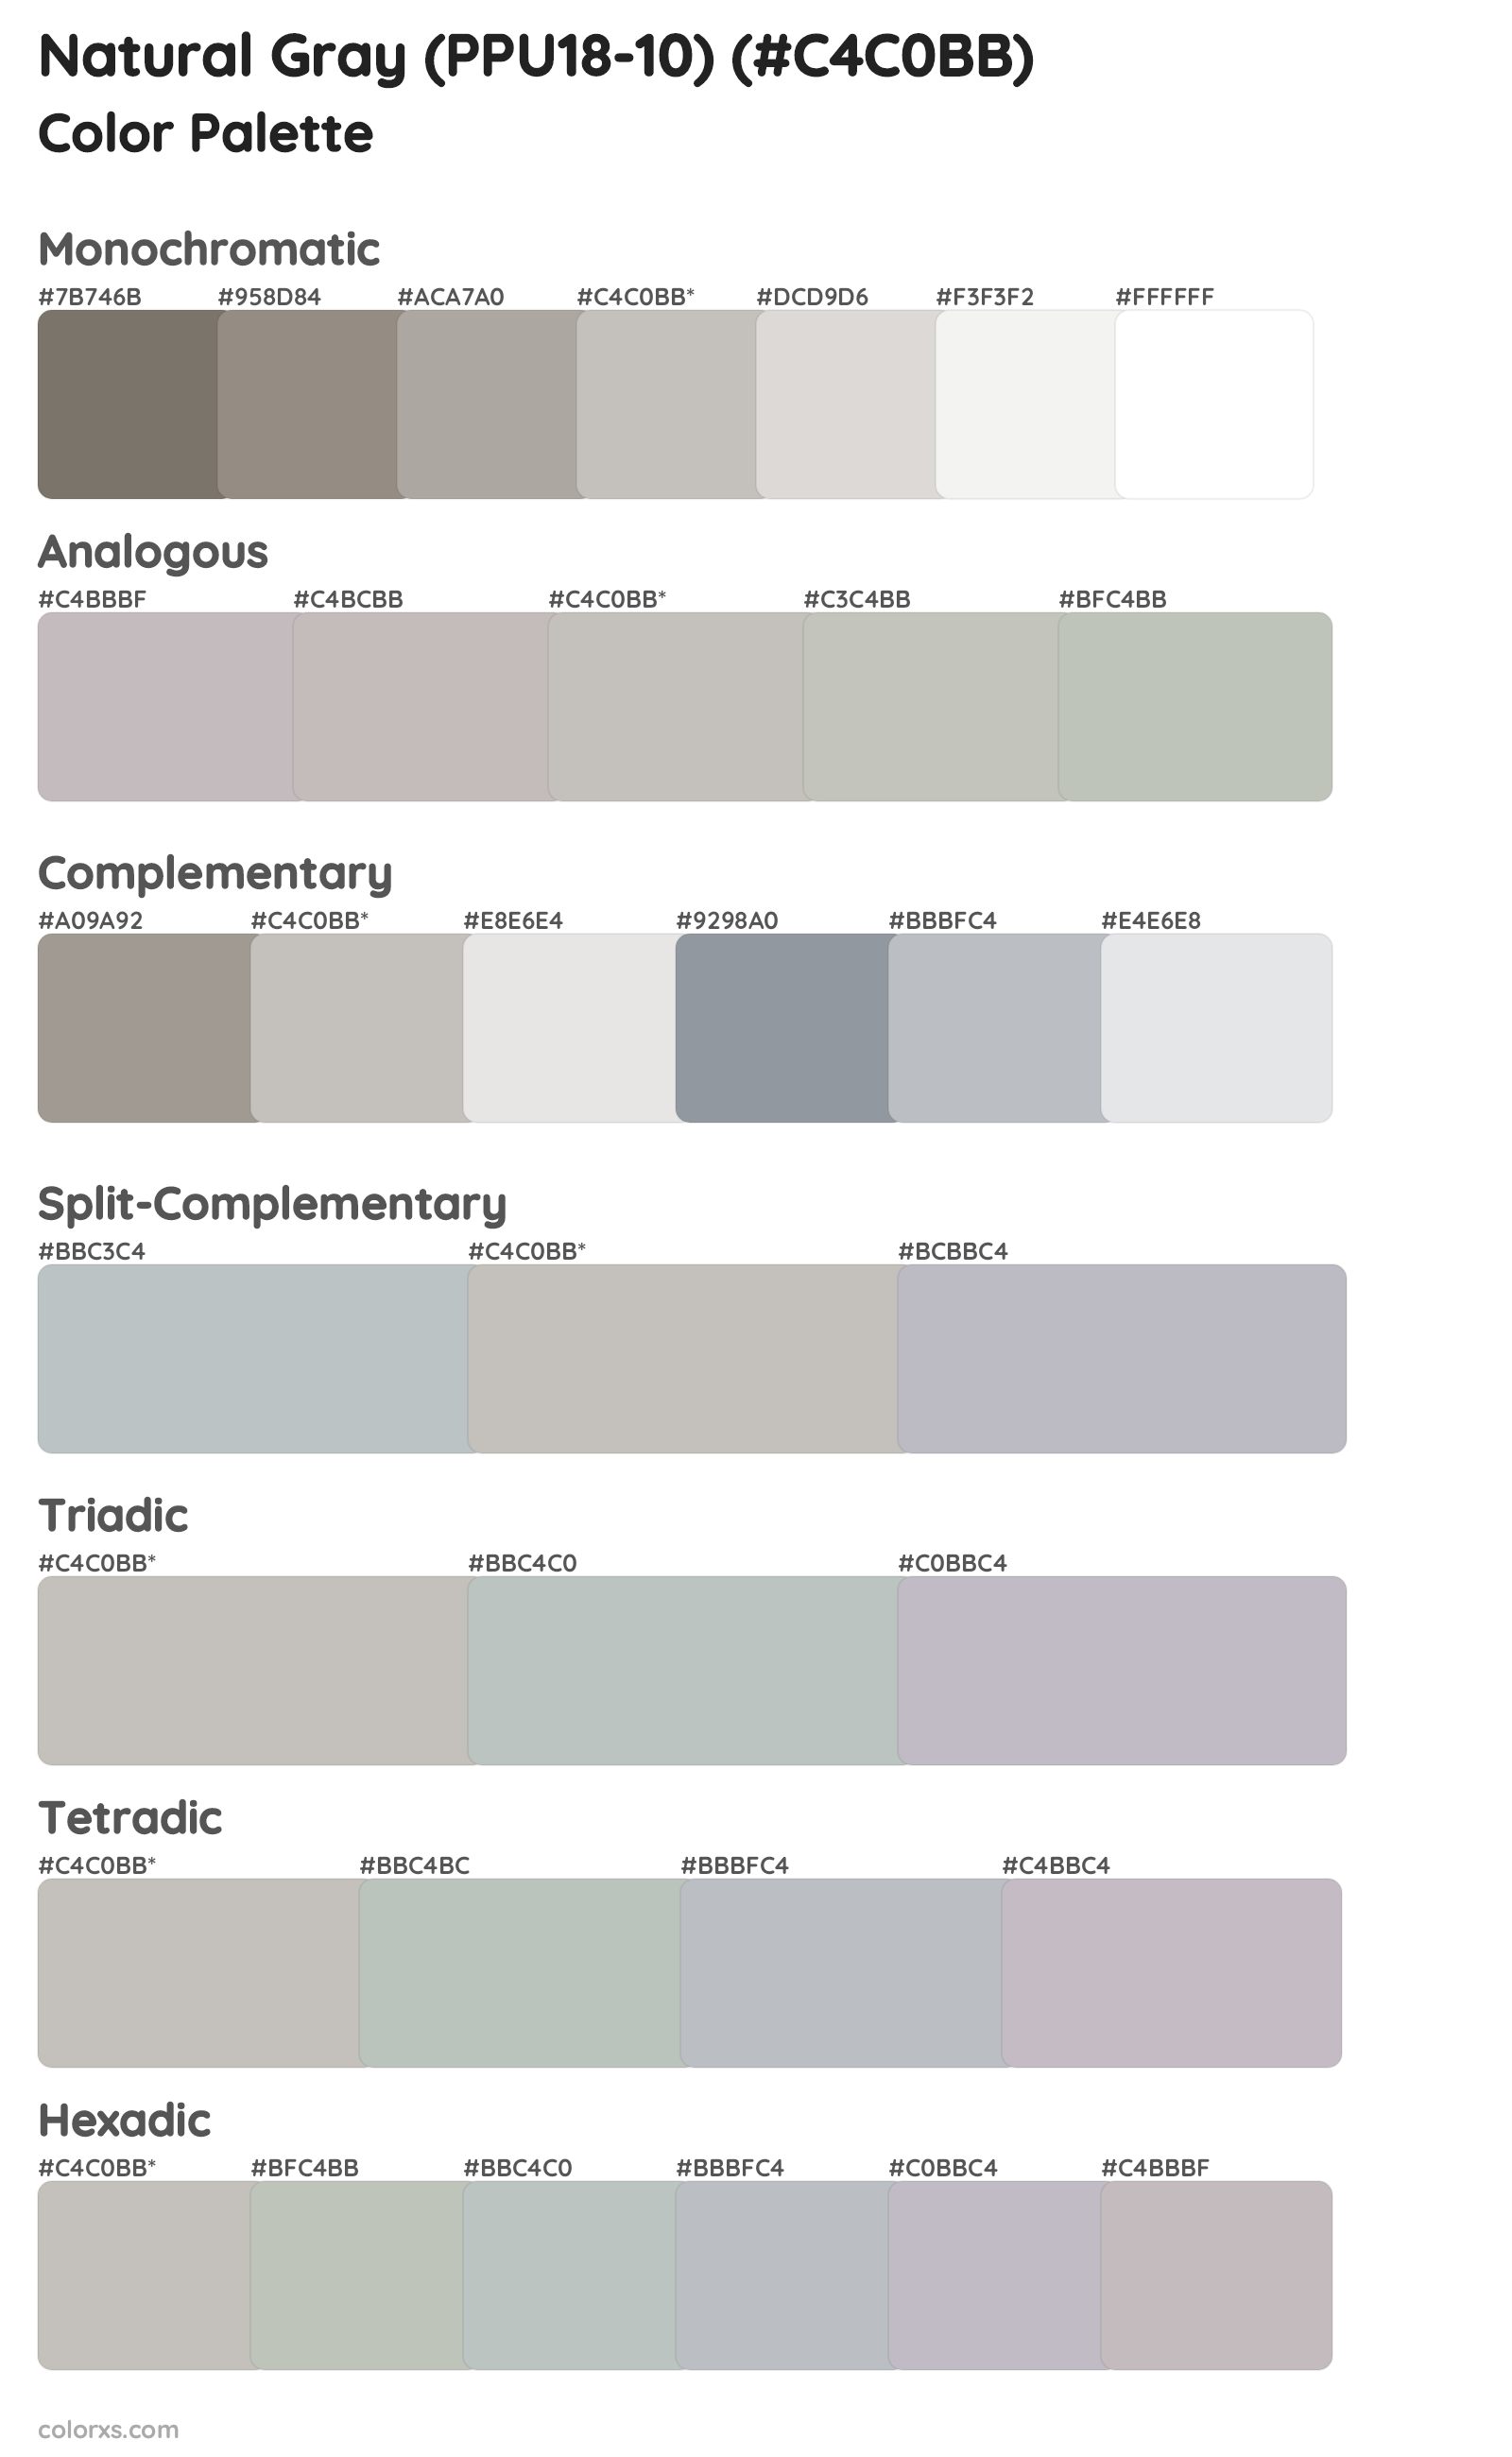 Natural Gray (PPU18-10) Color Scheme Palettes